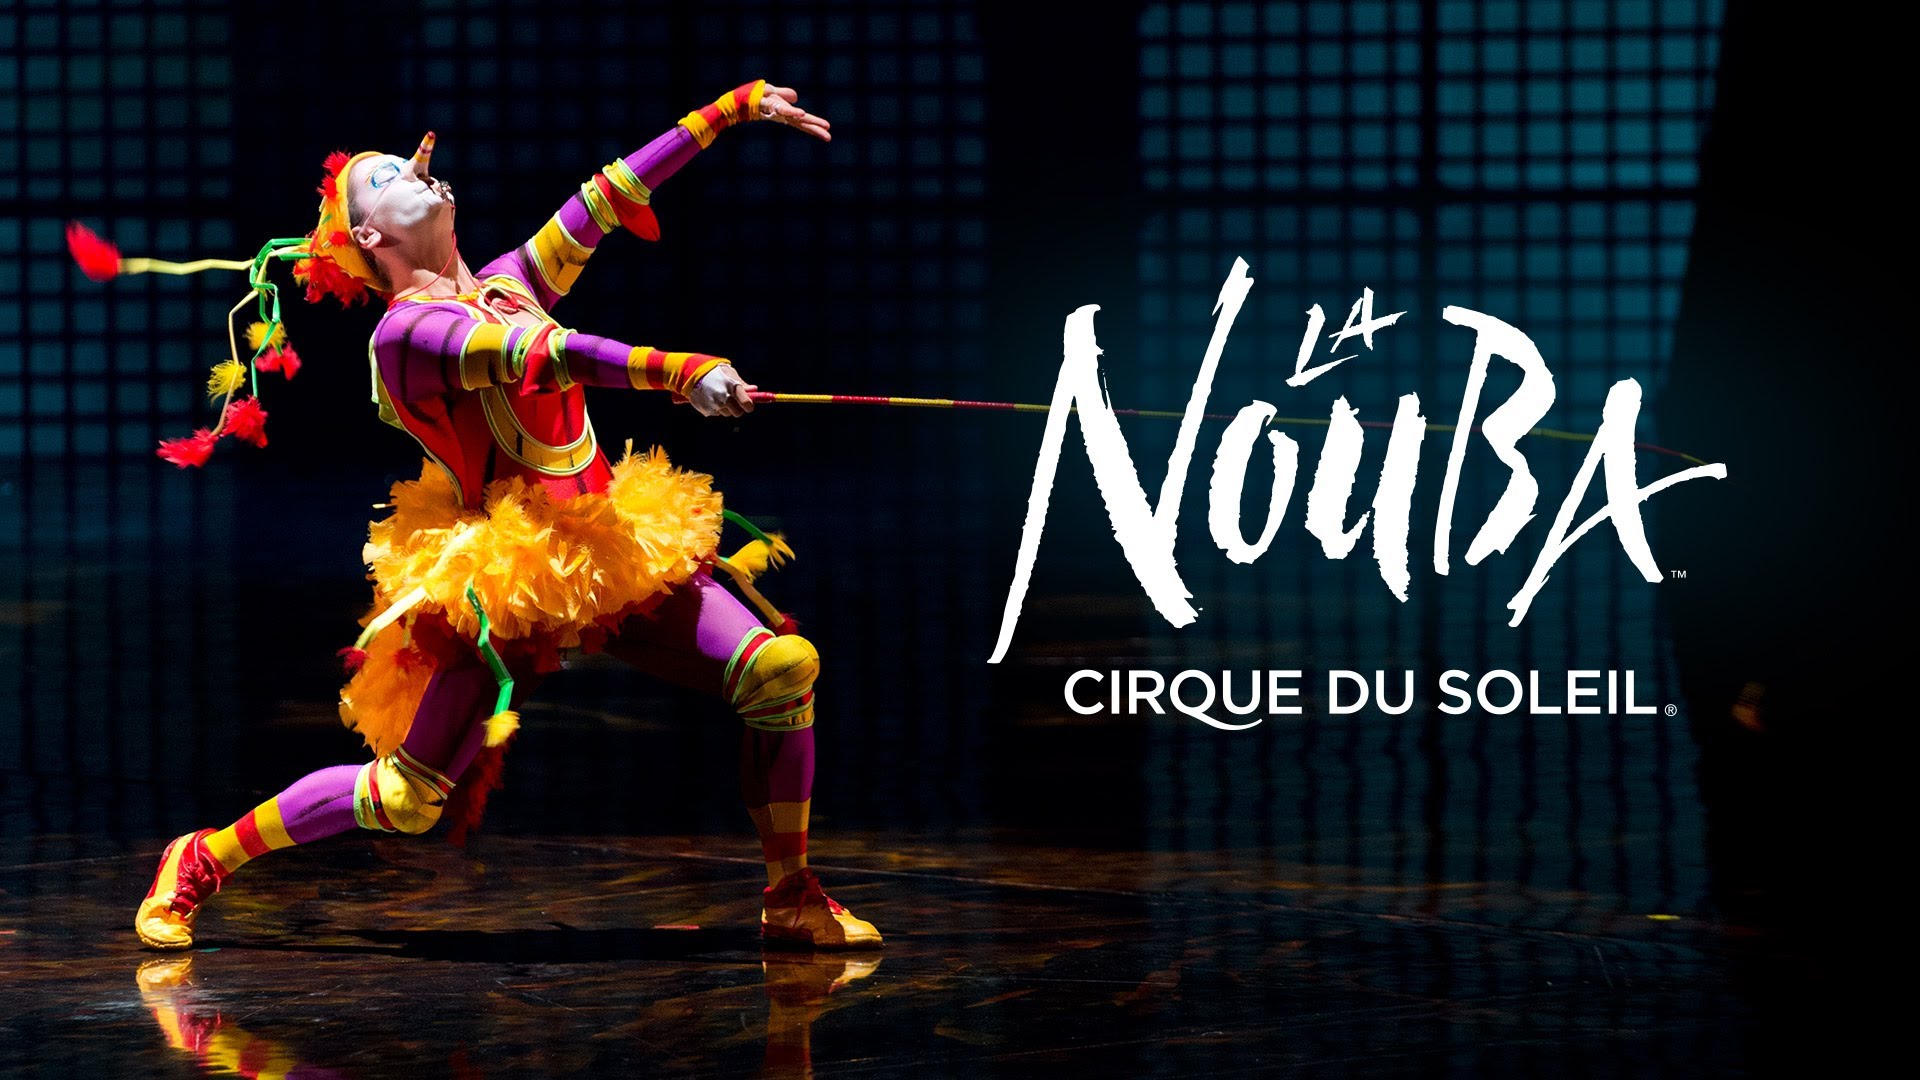 Special performances this Sunday at La Nouba by Cirque du Soleil